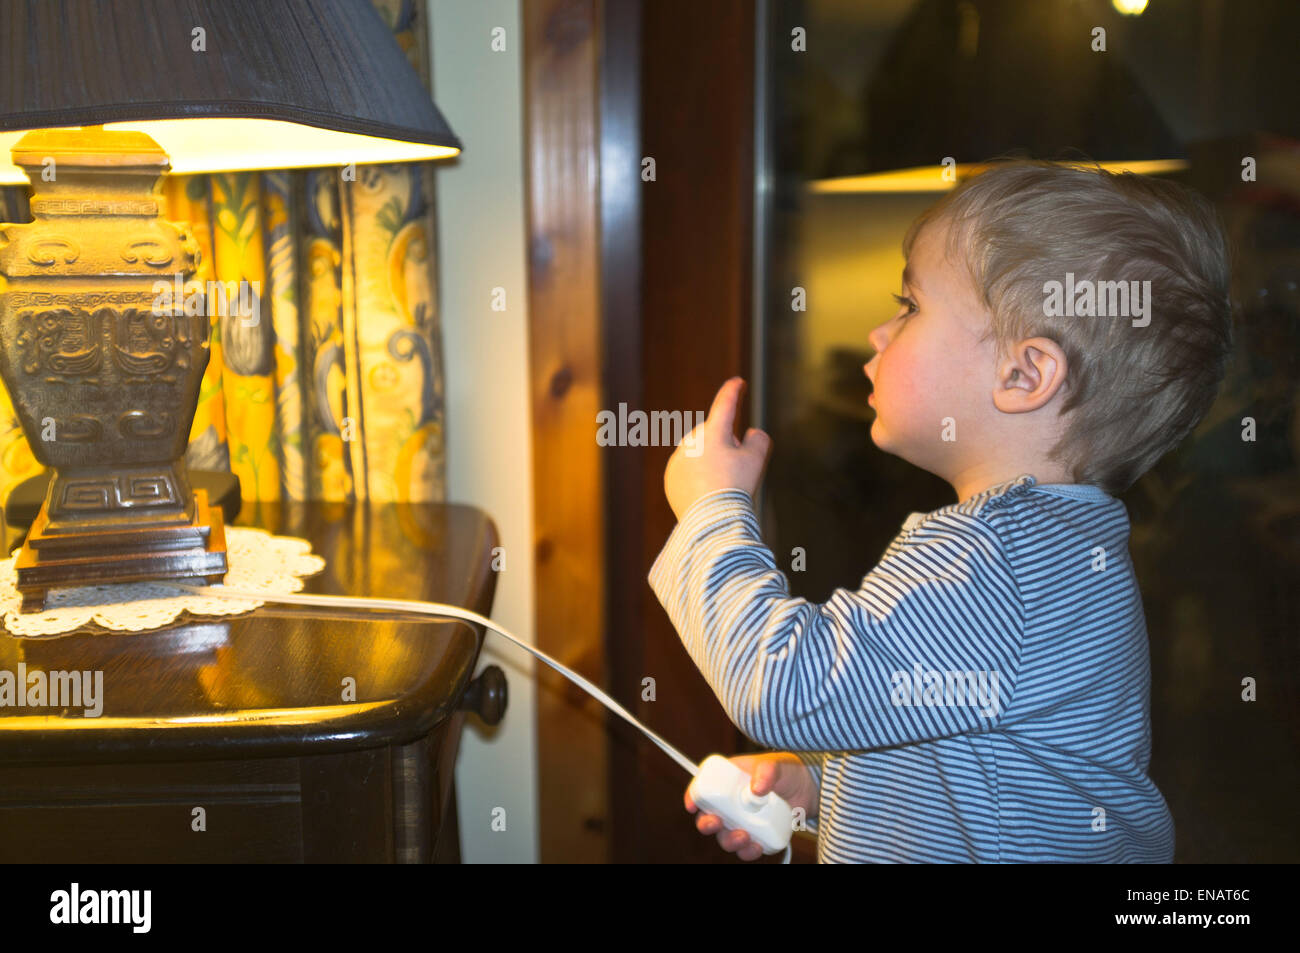 dh bambino elettricità CHILDERN Regno Unito bambino bambino bambino di due anni interruttore lampada esperimento luce a casa bambini sperimentando con l'elettricità Foto Stock